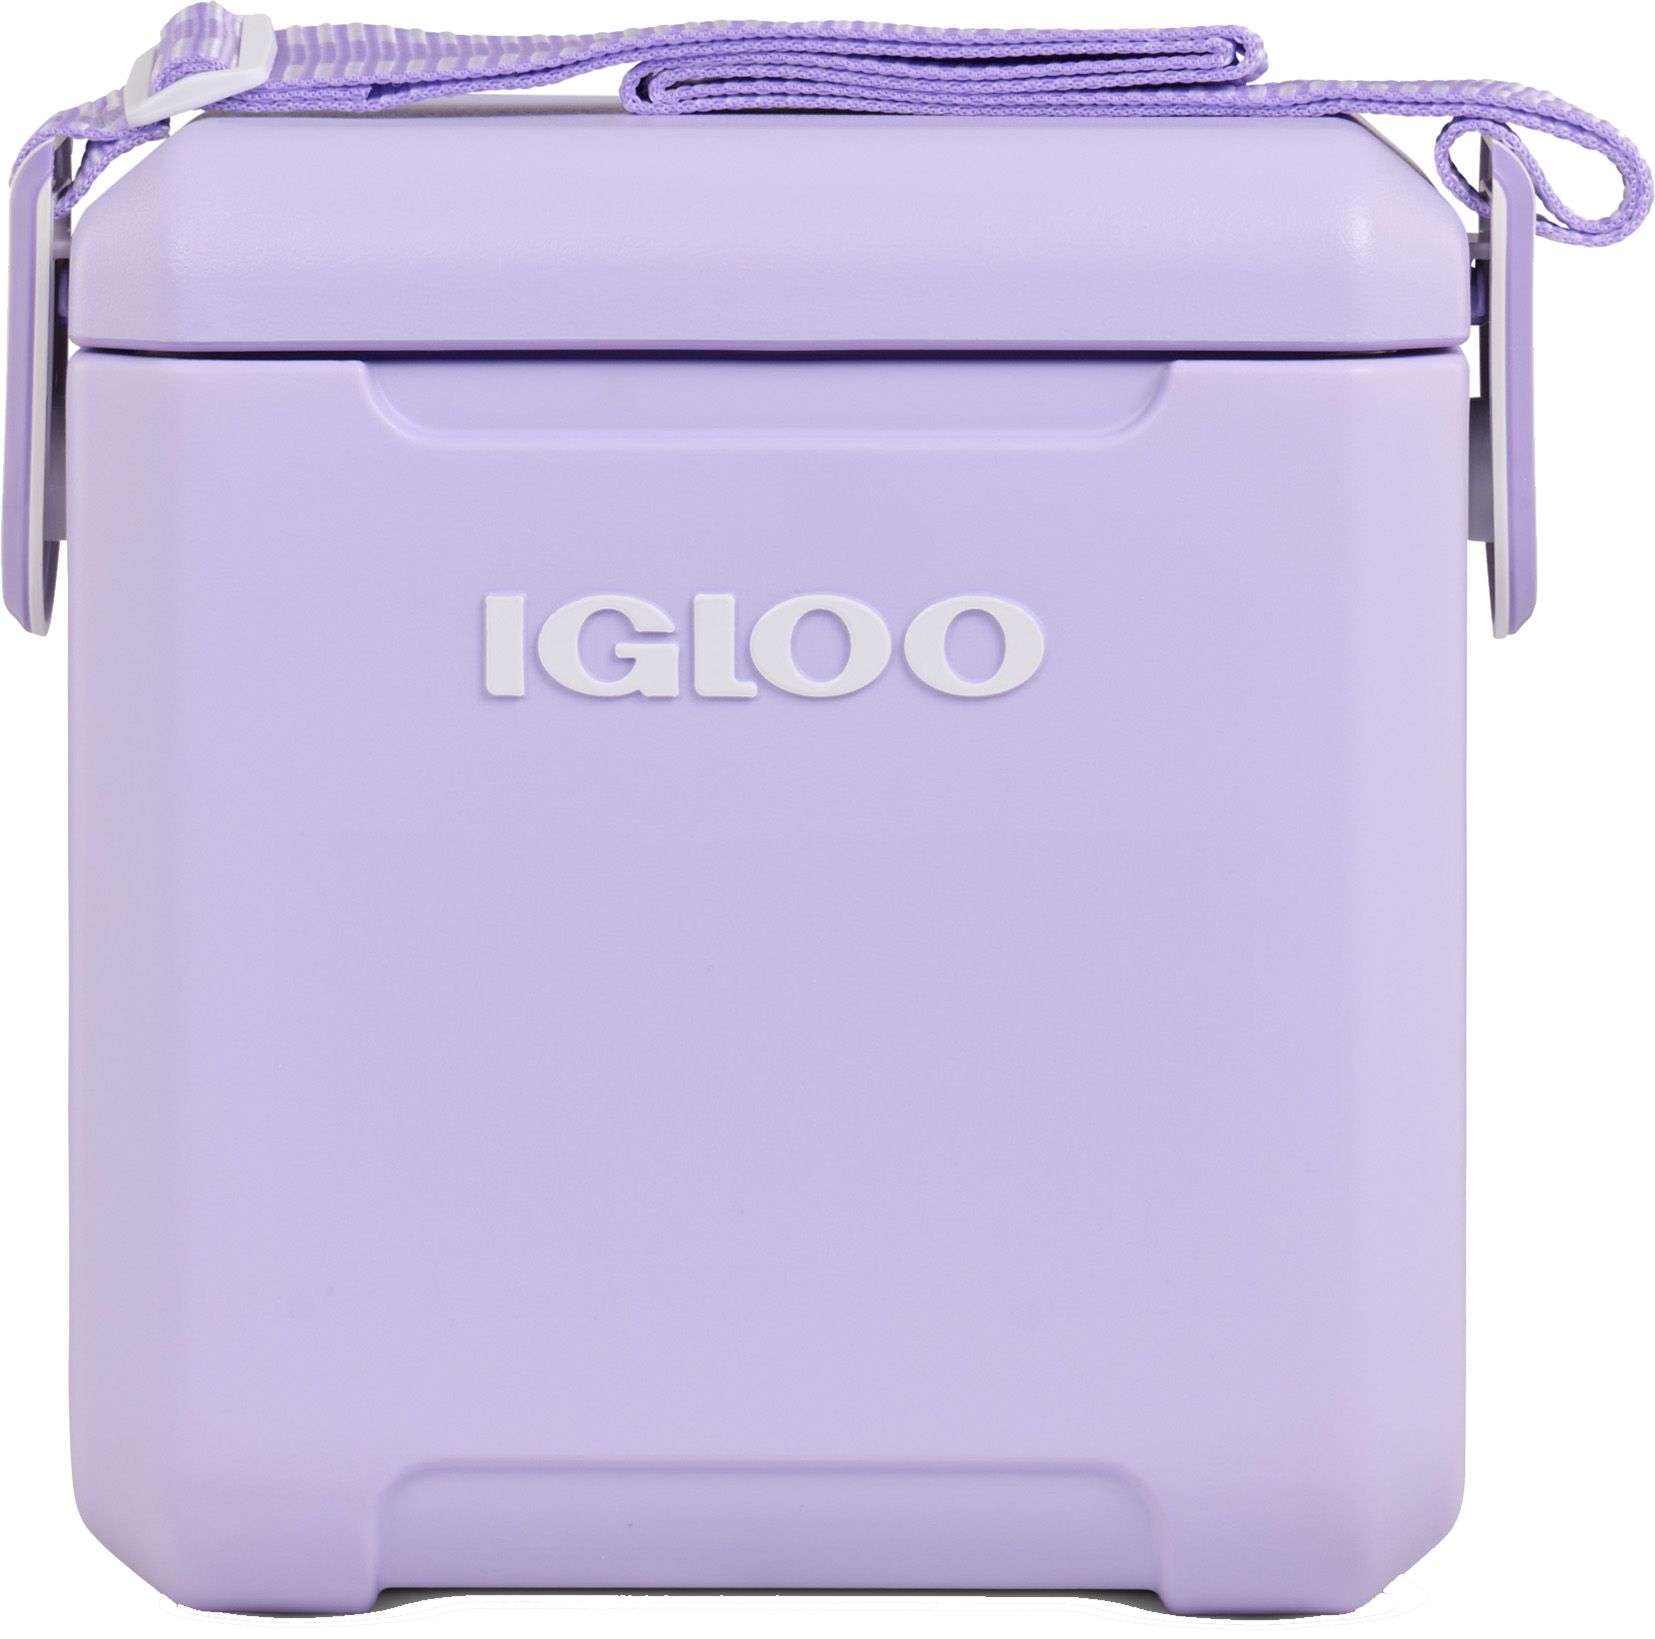 Photos - Cooler Bag Igloo 11 Qt. Tag Along Too Cooler, Lilac Breeze Solid 21IGLU11QTTGLNGTCREC 